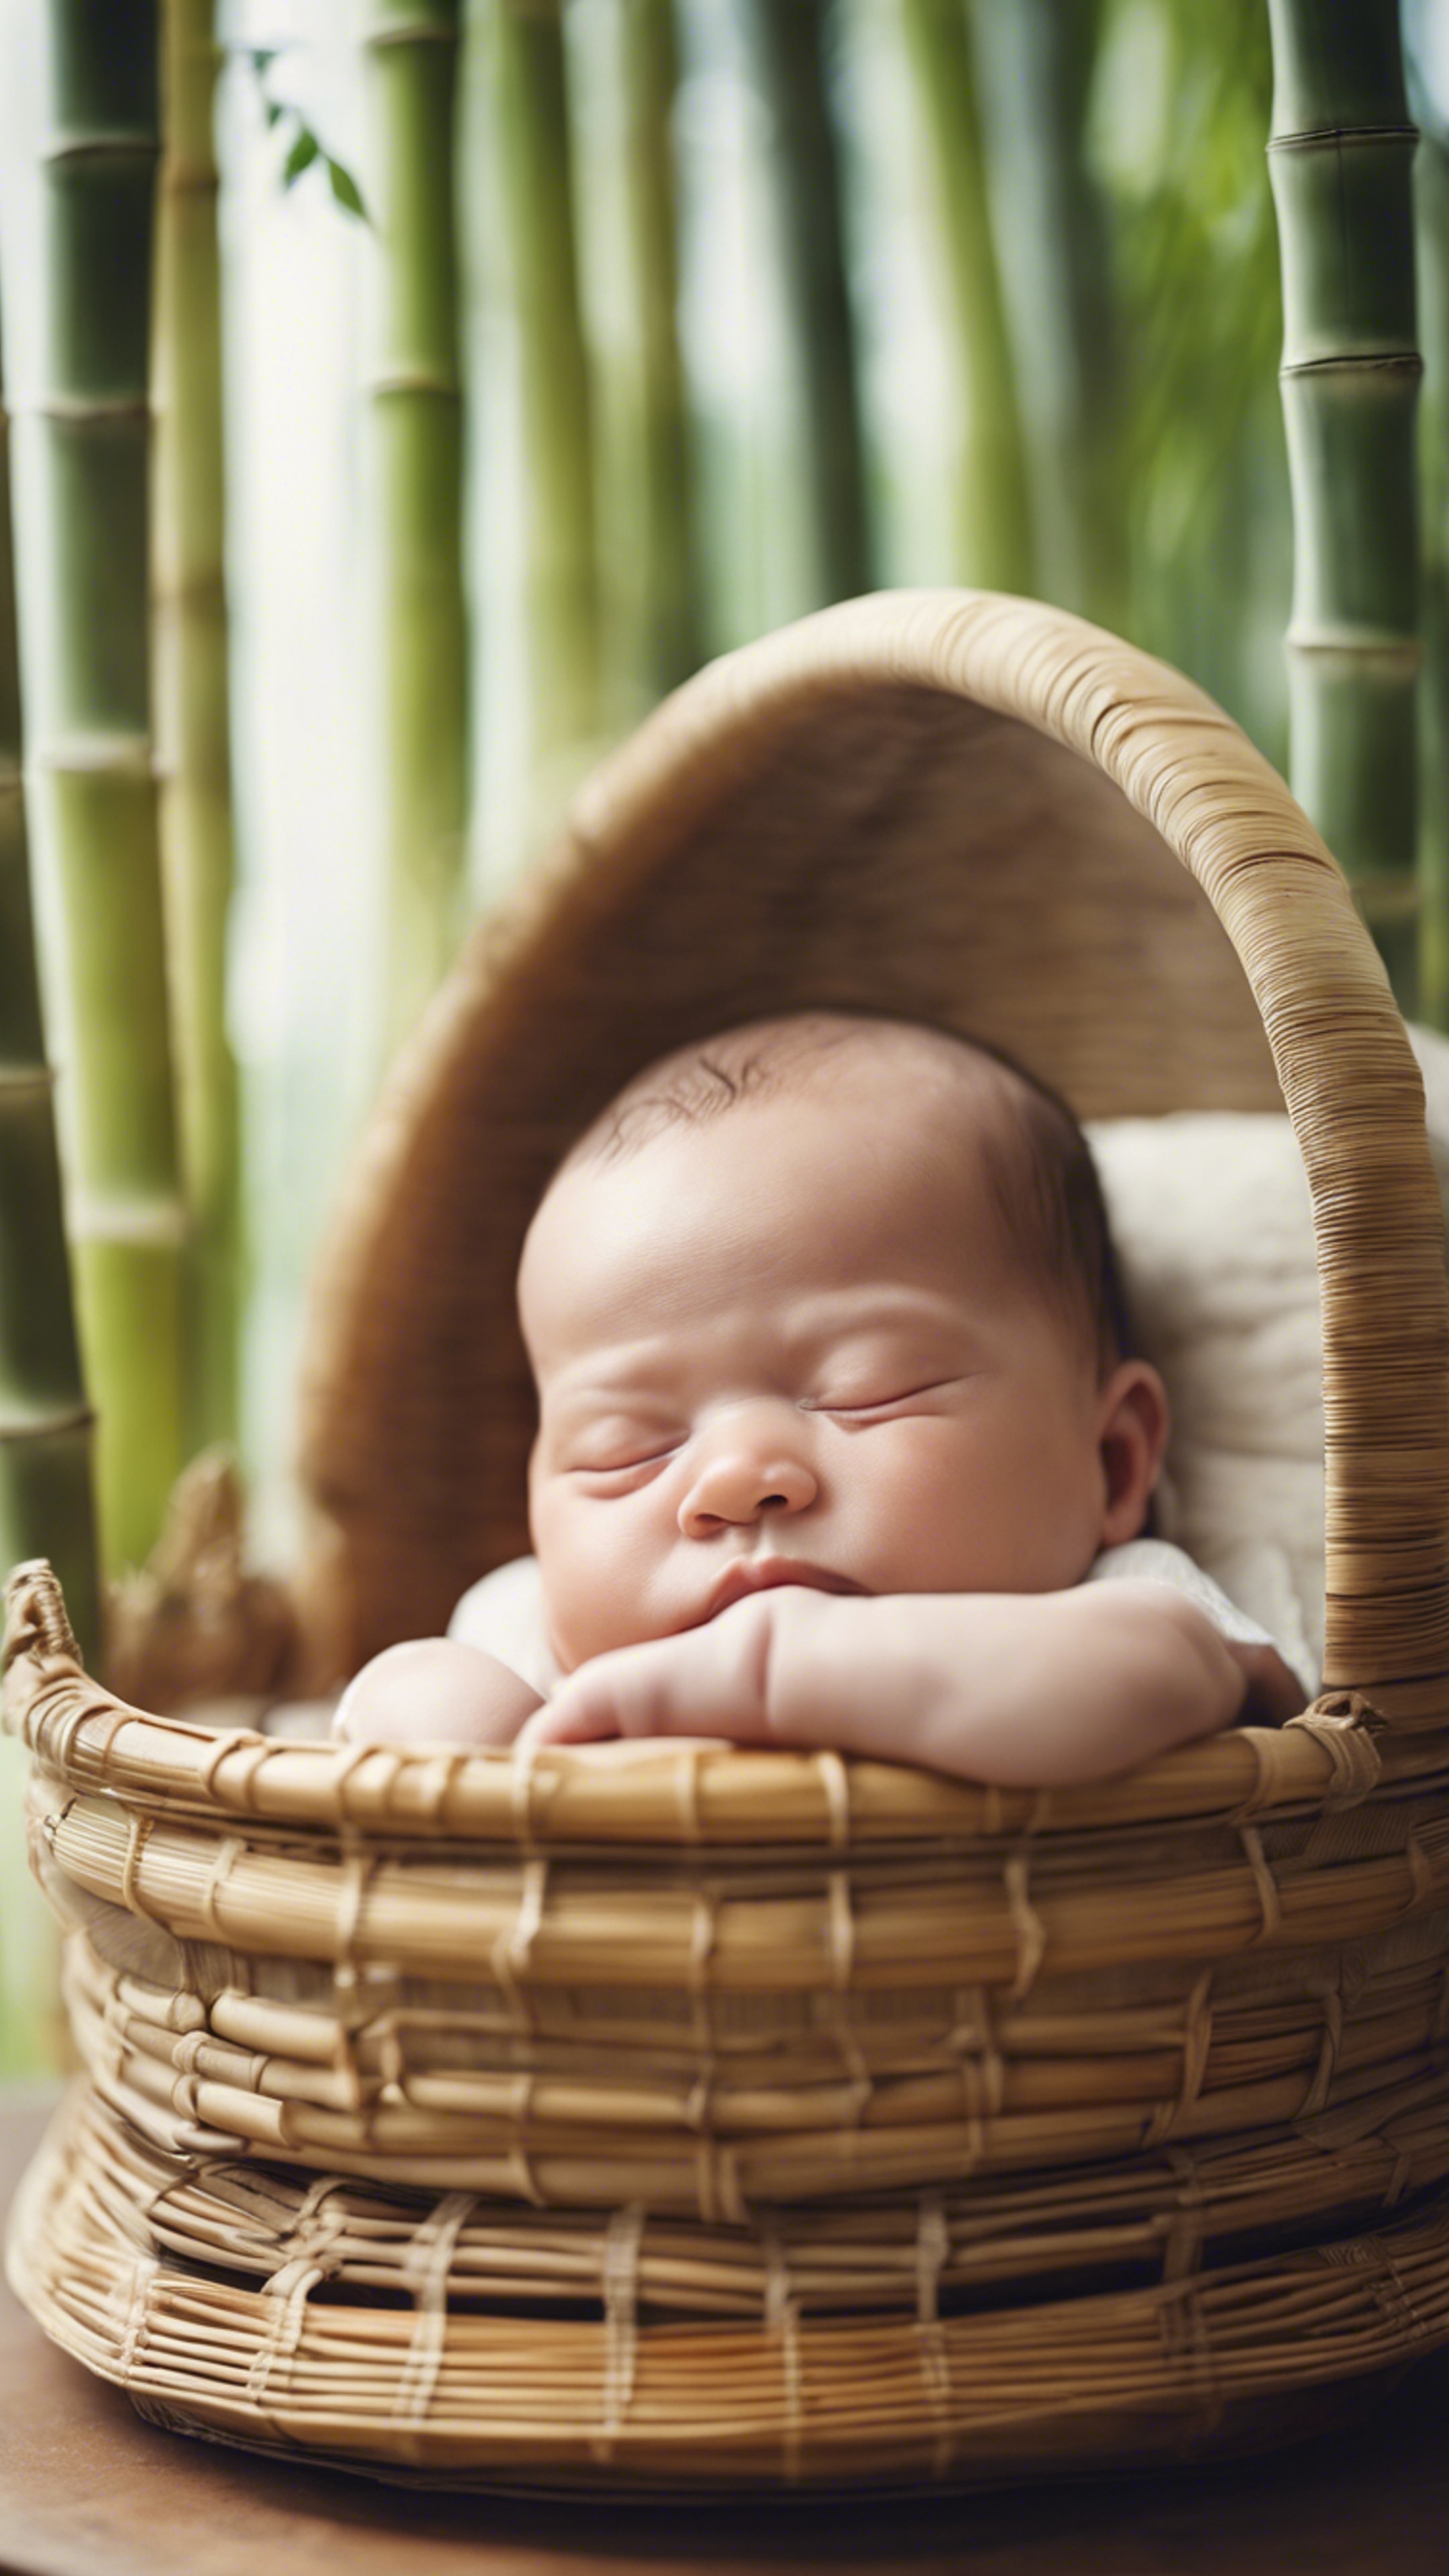 A newborn baby sleeping peacefully in a bamboo cradle. duvar kağıdı[aa600c14ac9b4a439482]